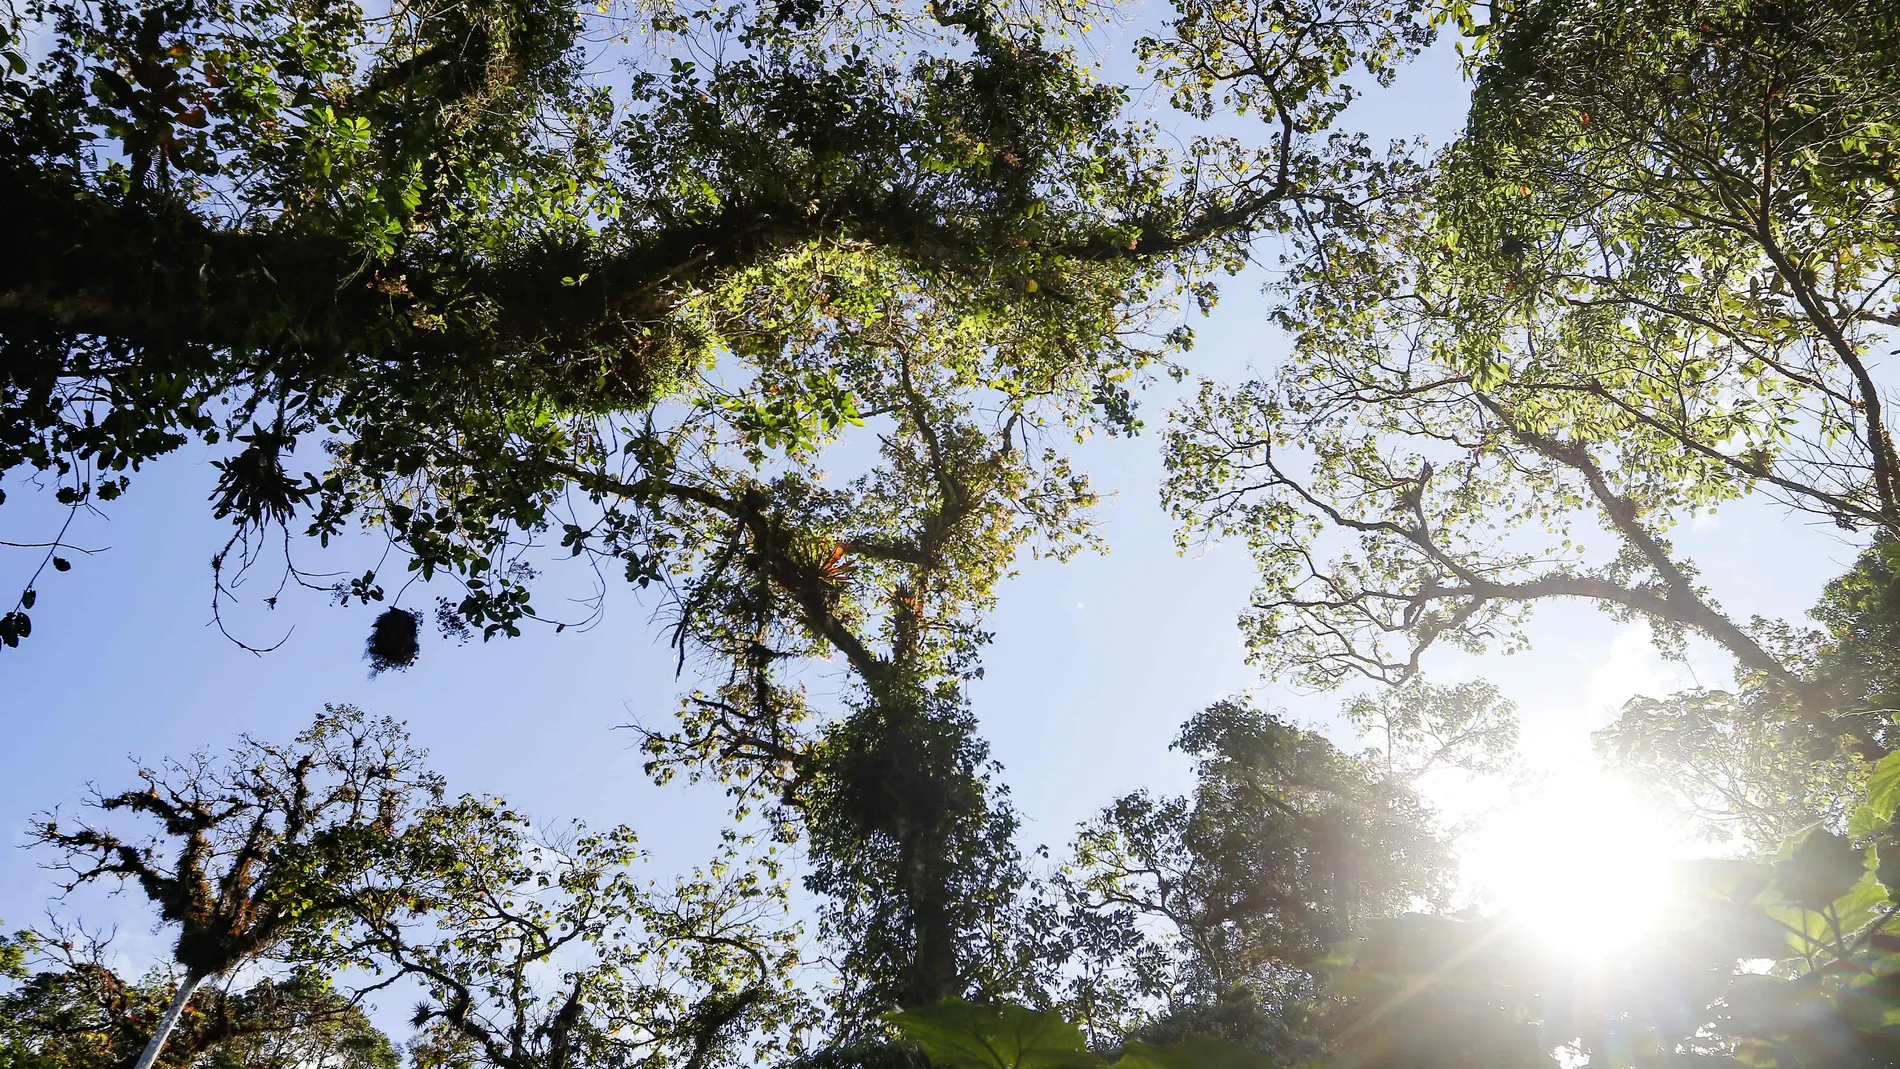 AME7403. SAN JOSÉ (COSTA RICA), 31/12/2020.- Vista del bosque nuboso Palo Verde, una reserva natural ubicada en el centro de Costa Rica, con una basta biodiversidad, que alberga una centena de aves y gran cantidad de senderos para la caminata en la provincia de Cartago (Costa Rica). El Bosque Nuboso Palo Verde, una reserva natural ubicada en el centro de Costa Rica, se convierte en un rincón lleno de biodiversidad, con el ingrediente especial de caminatas y senderos para el avistamiento de más de una centena de aves. EFE/Jeffrey Arguedas